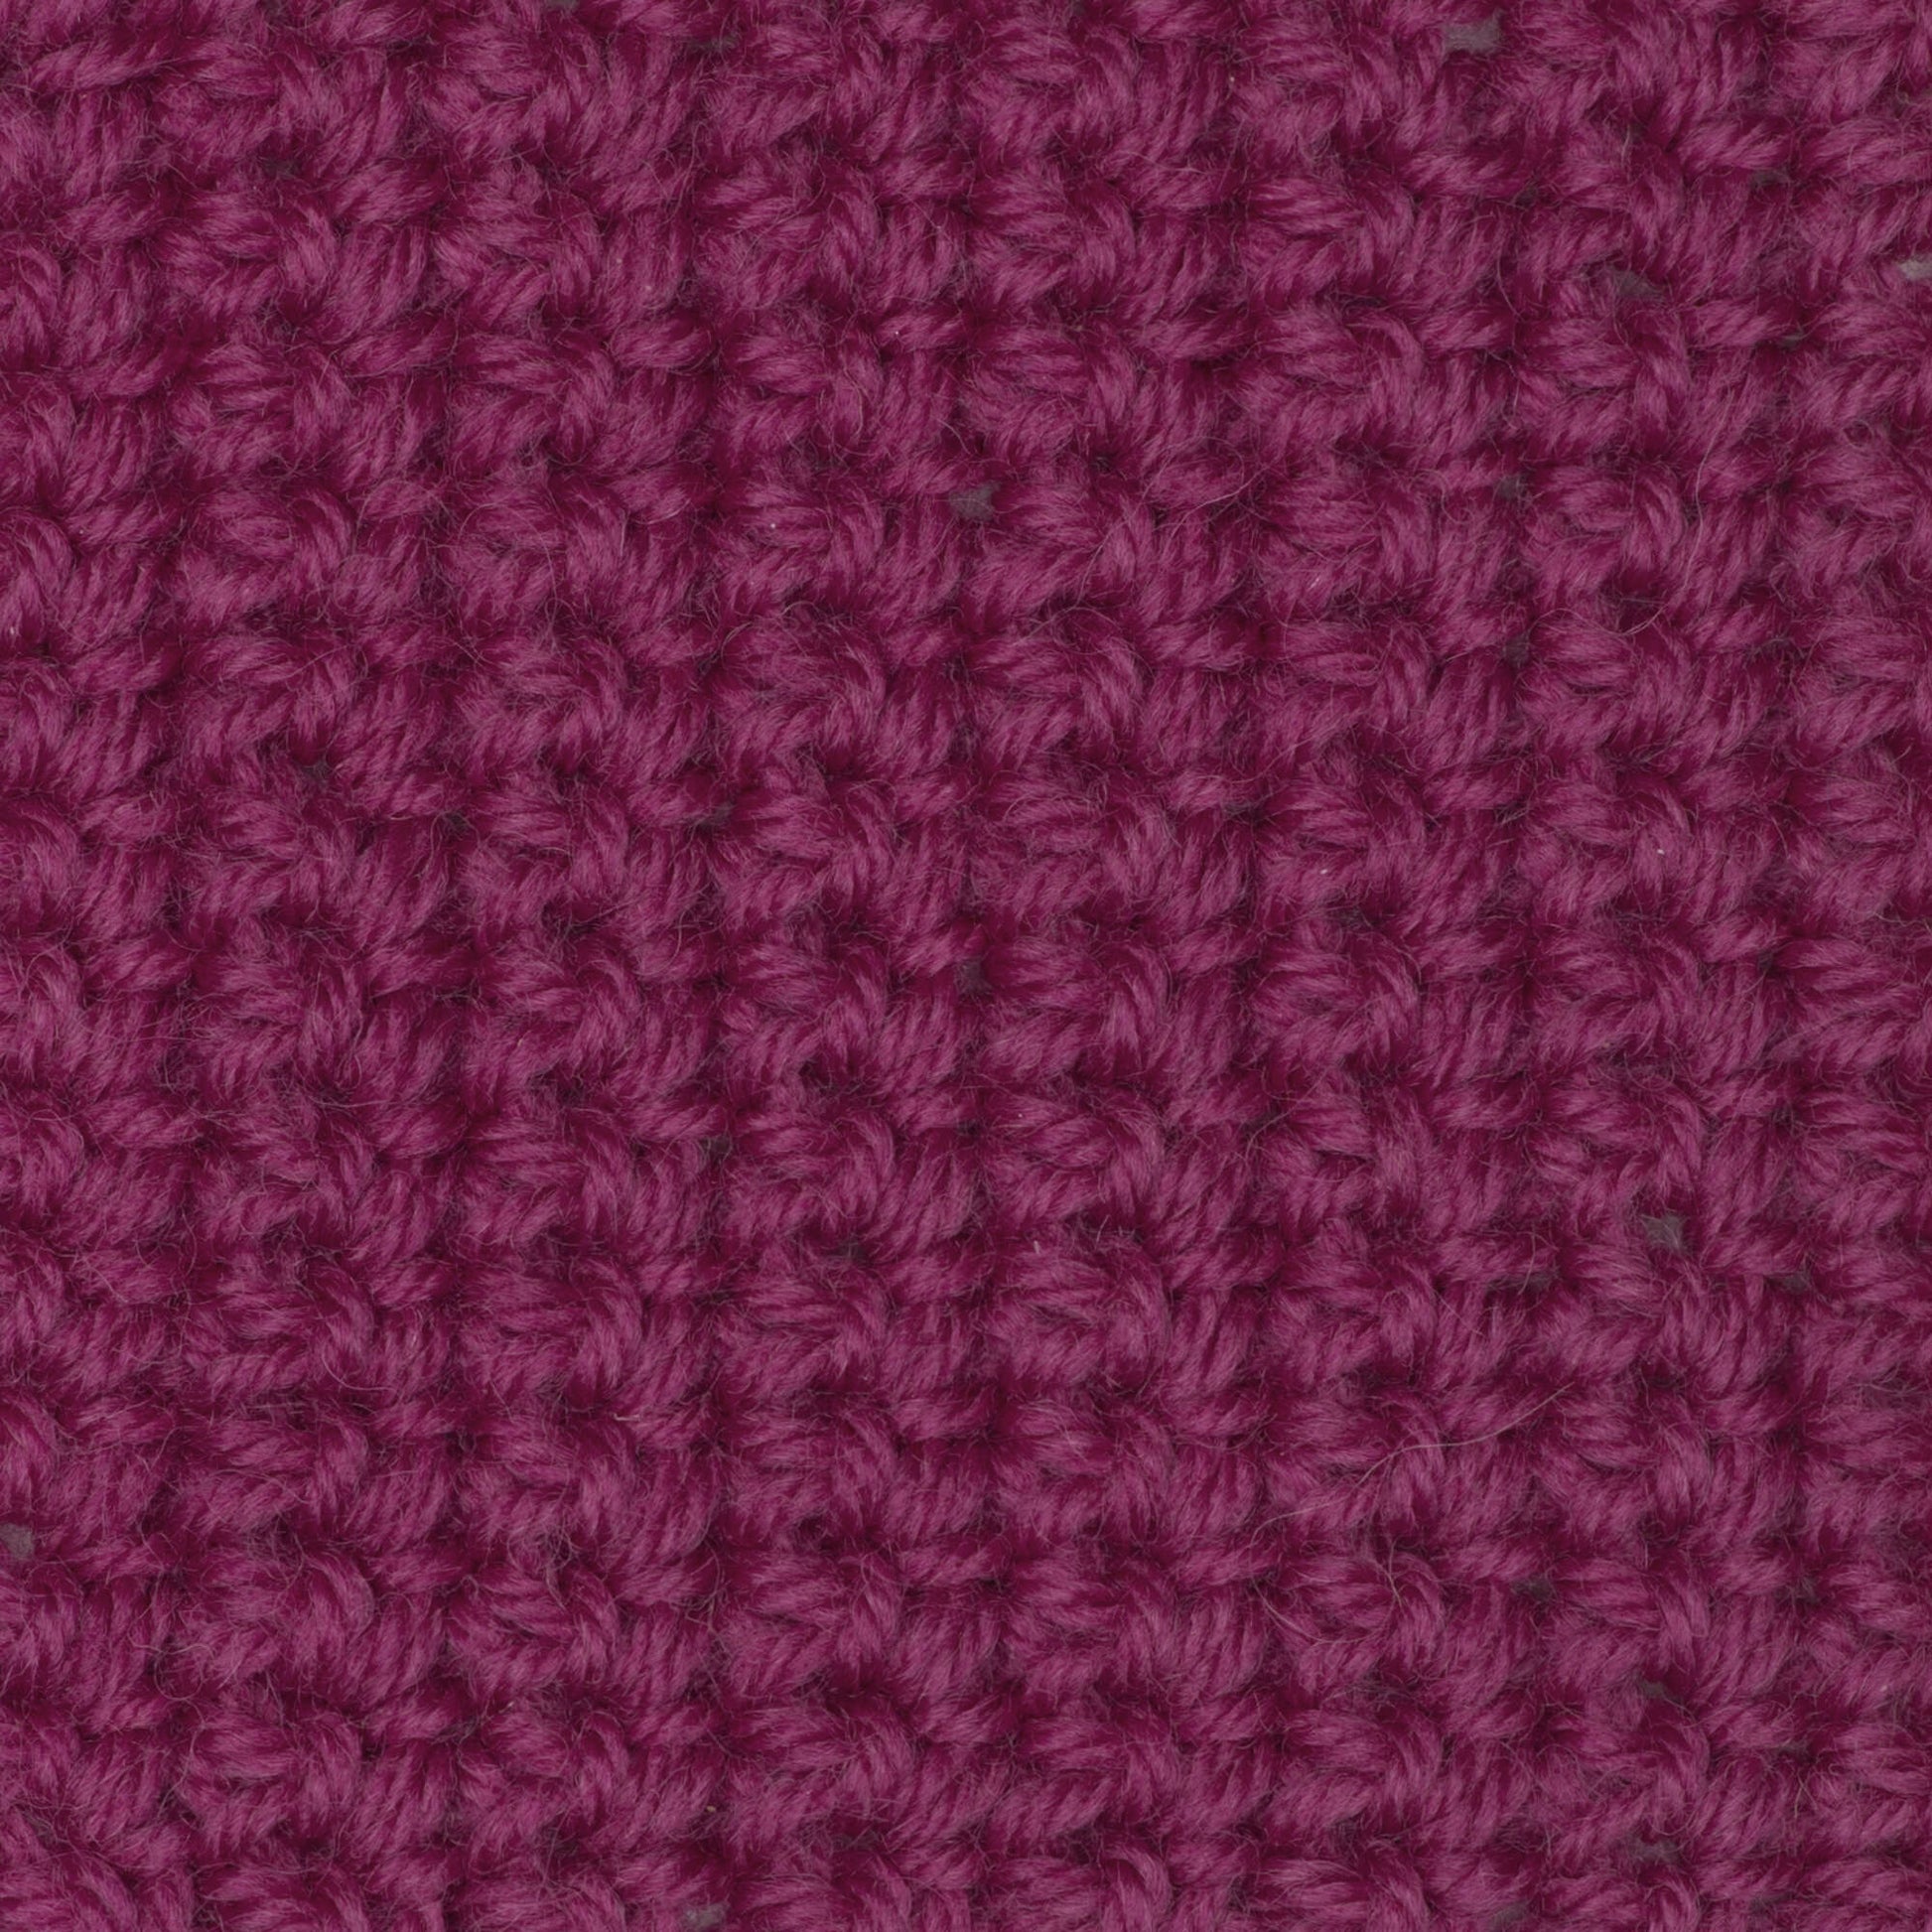 Patons Classic Wool DK Superwash Yarn - Discontinued Shades Magenta